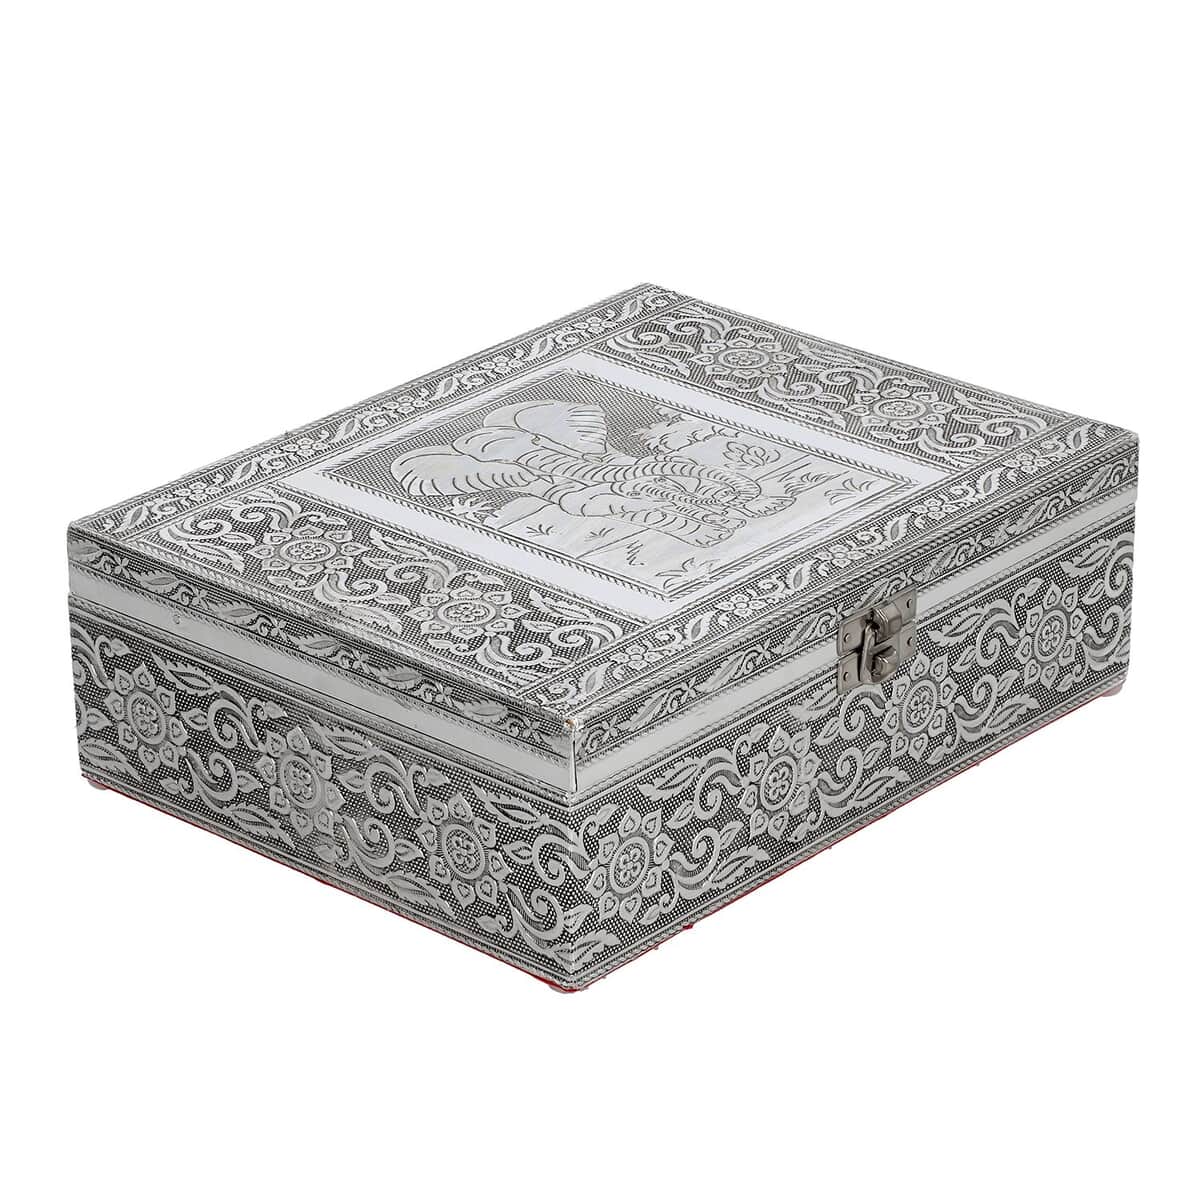 Aluminium Oxidized Elephant Family Embossed Movable Tray Jewelry Box image number 0